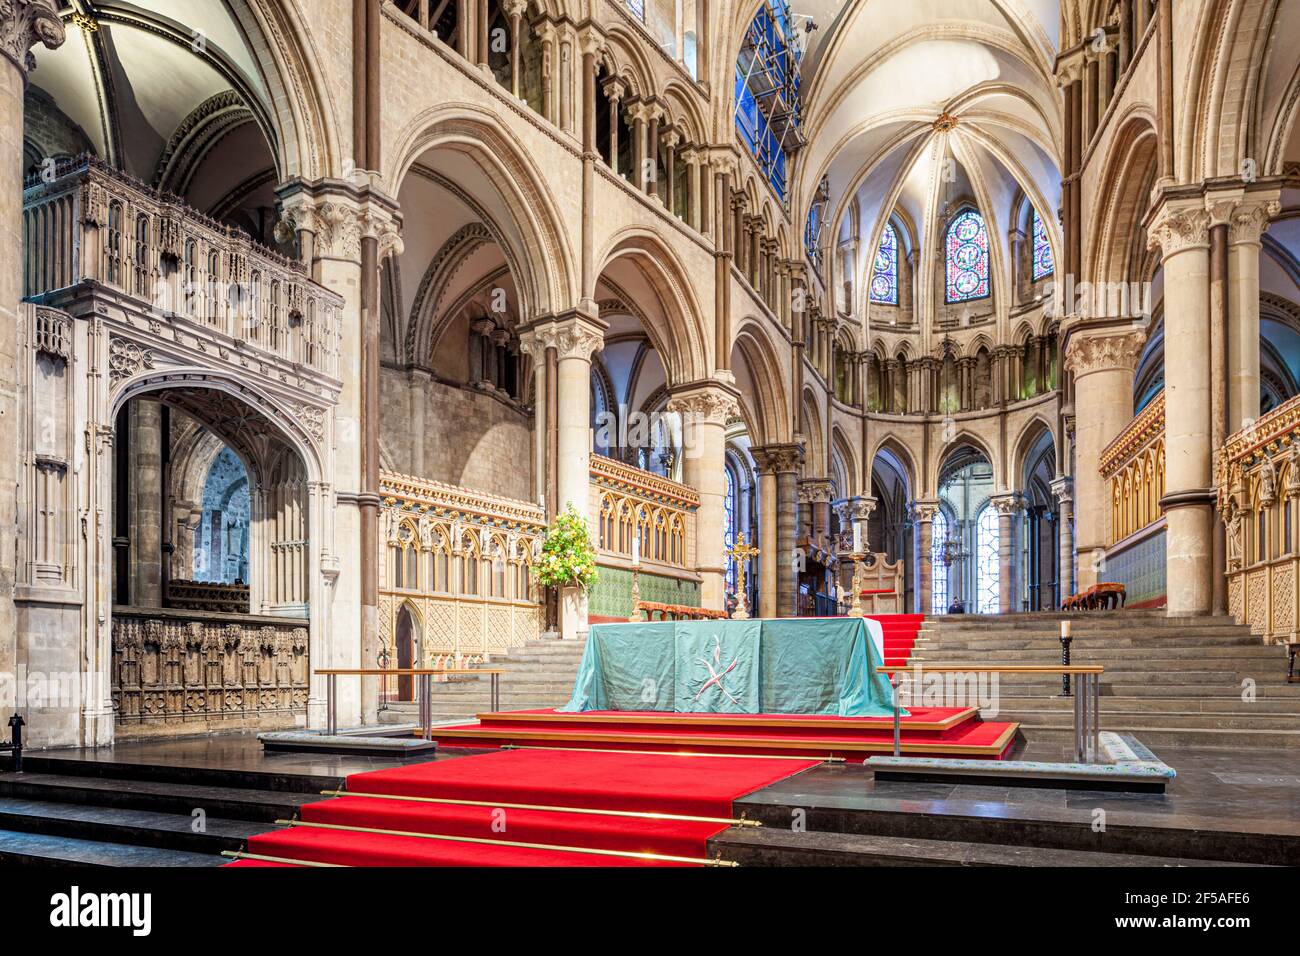 Le haut autel à la cathédrale de Canterbury, Kent, Angleterre Royaume-Uni Banque D'Images